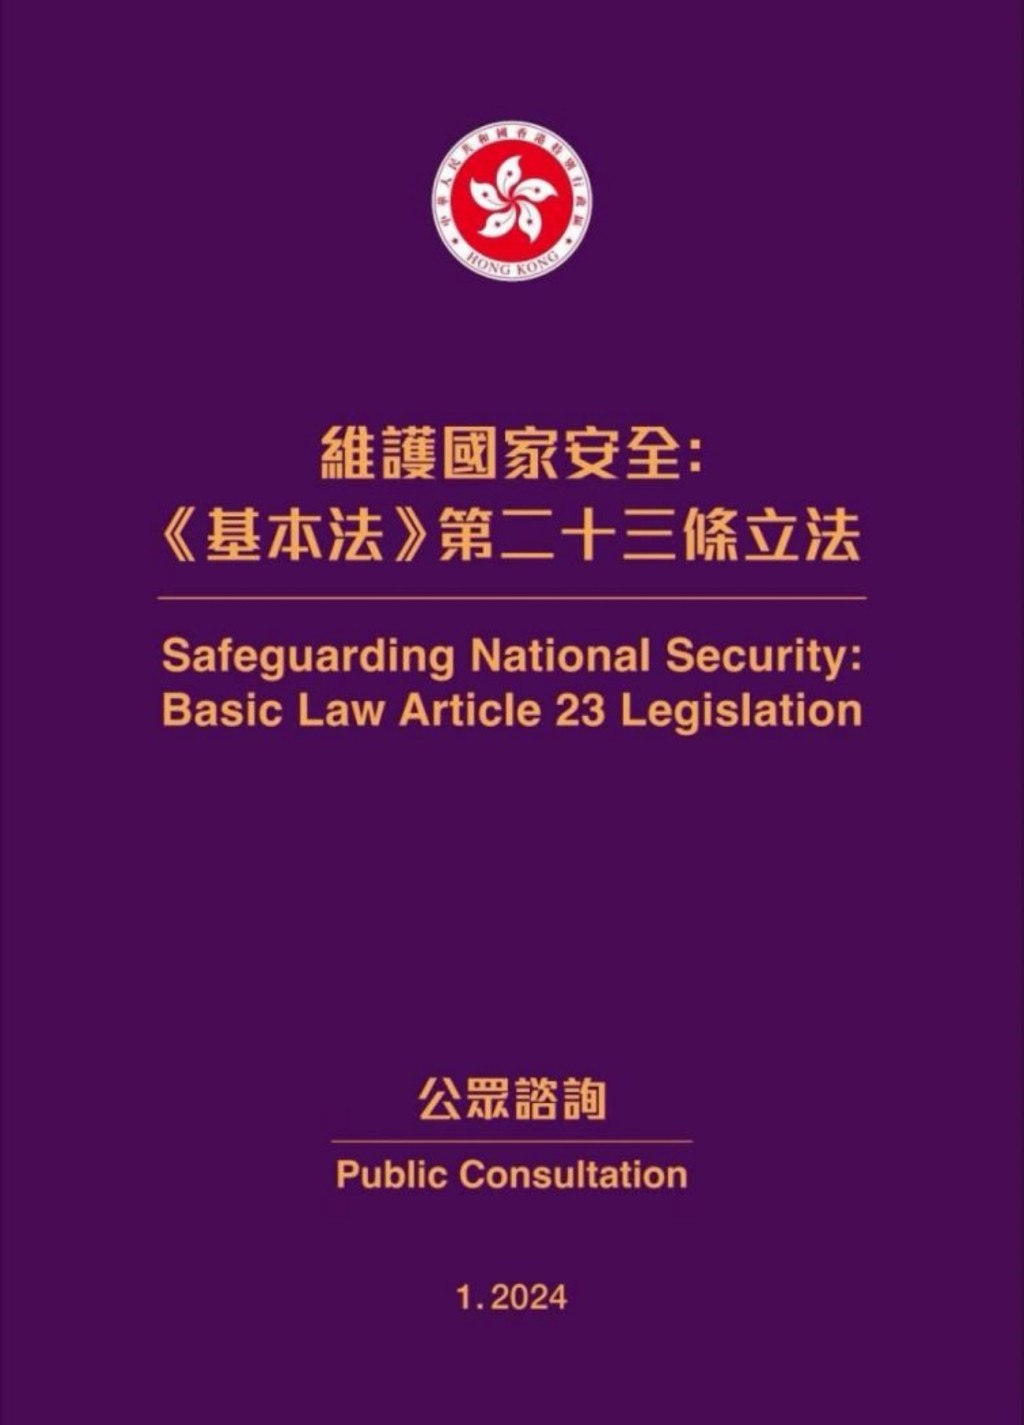 李家超表示，回顧過去一年，香港完成了基本法第23條立法的憲制責任。資料圖片